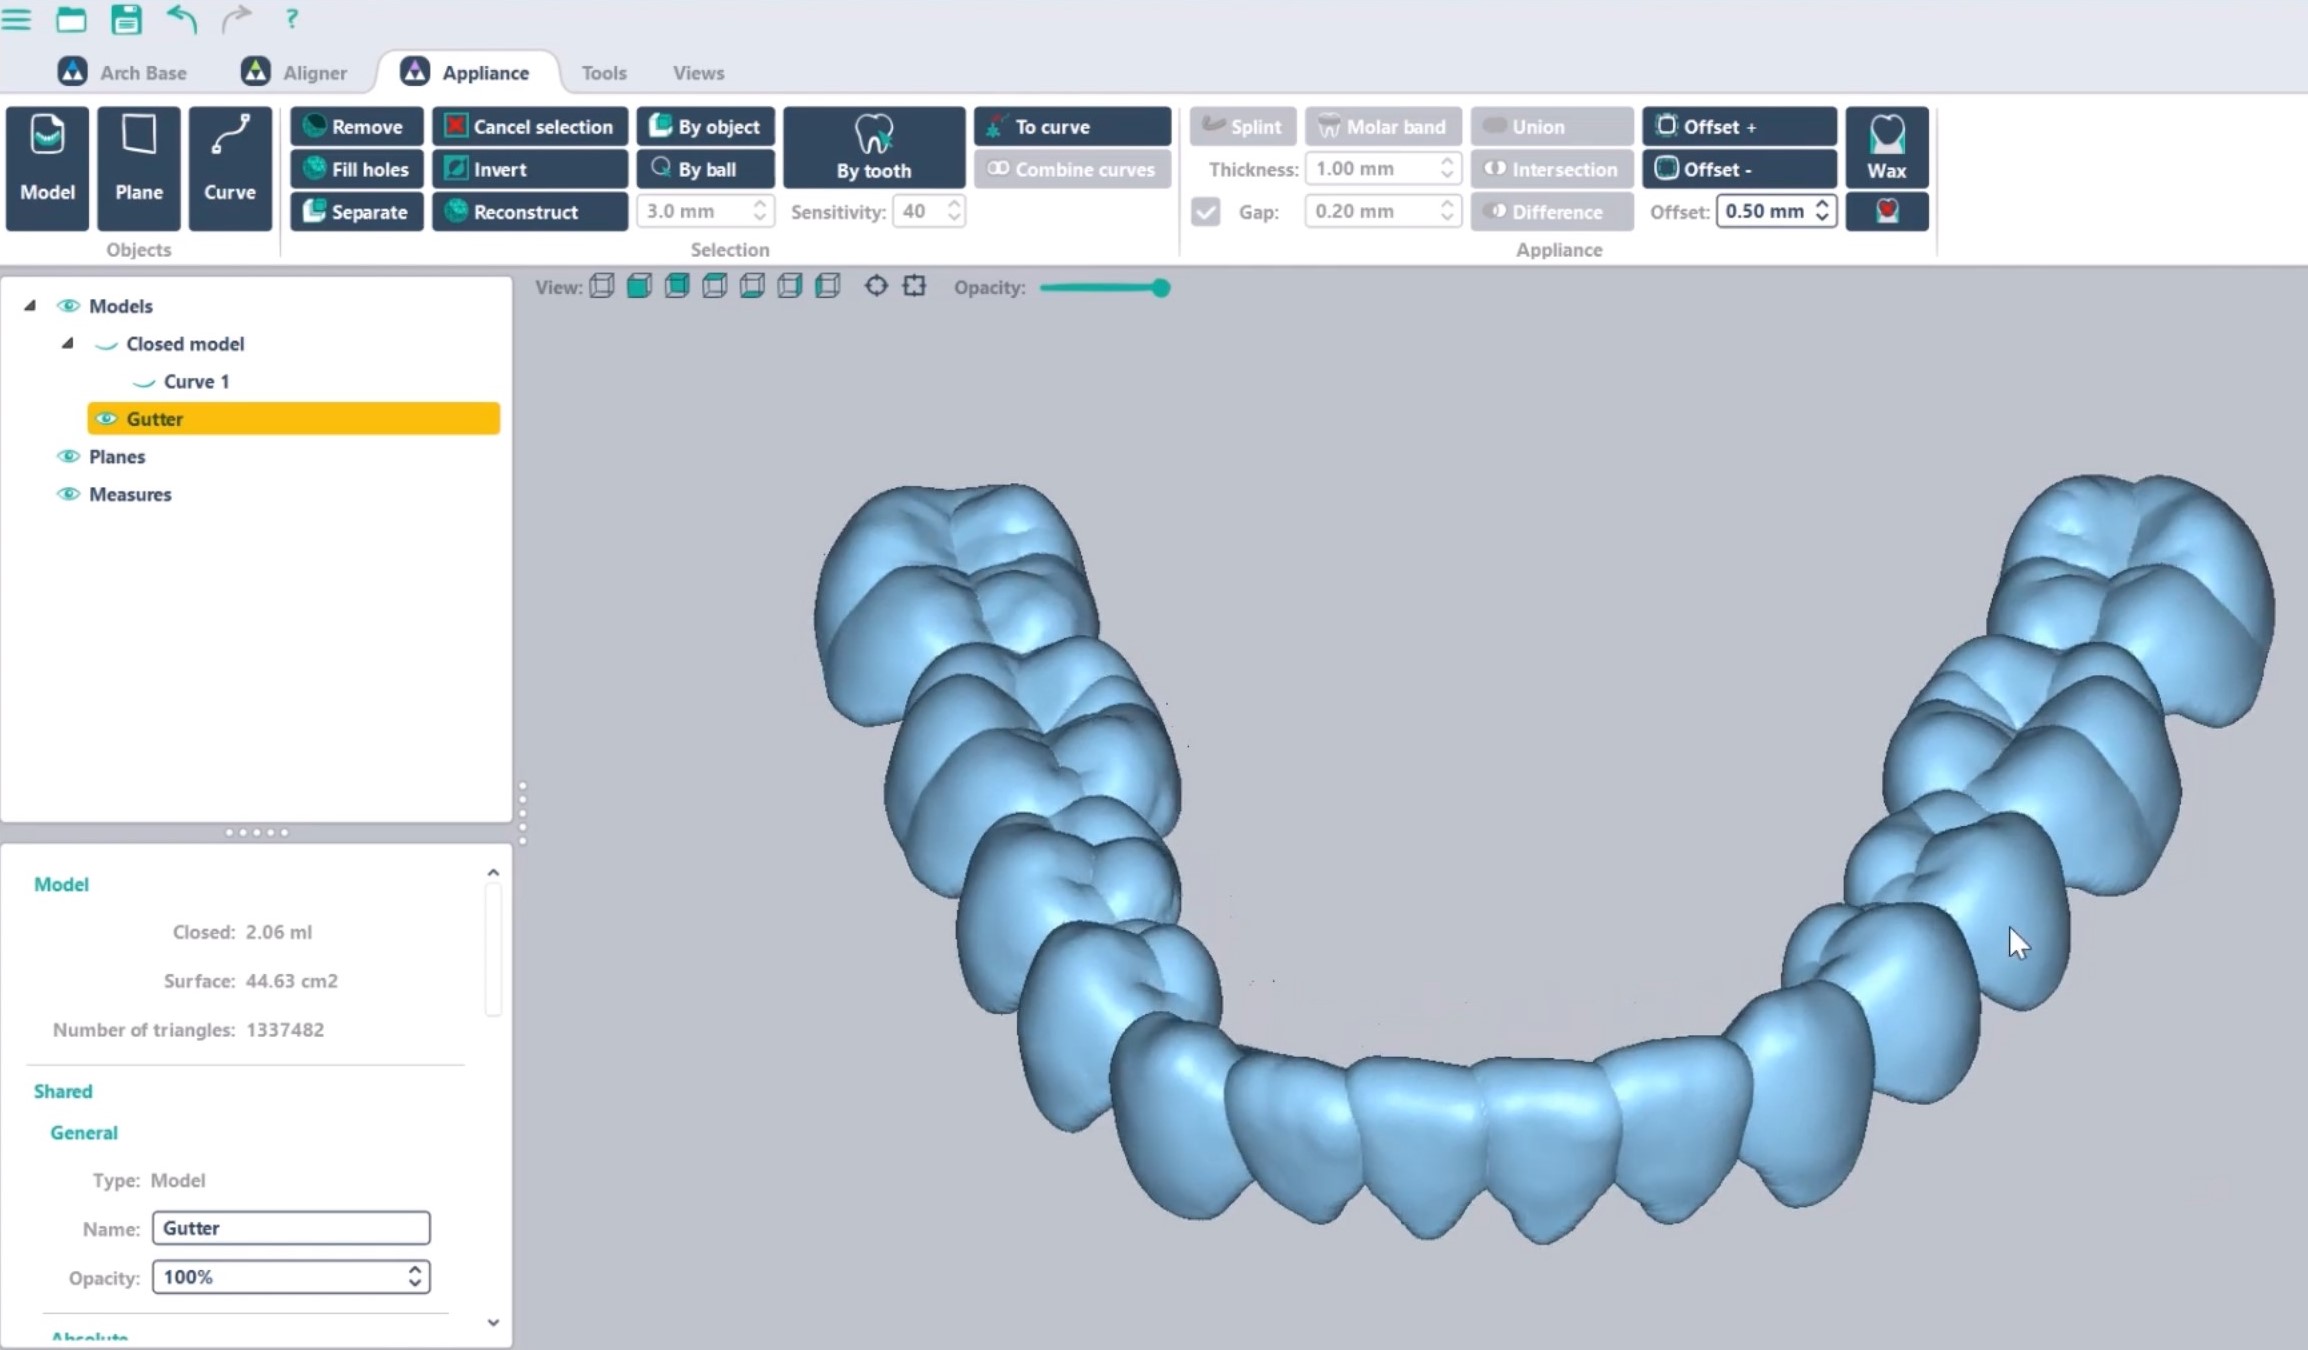 Gouttières de bruxisme contention modèle dentaire 3D Arch Base DeltaFace